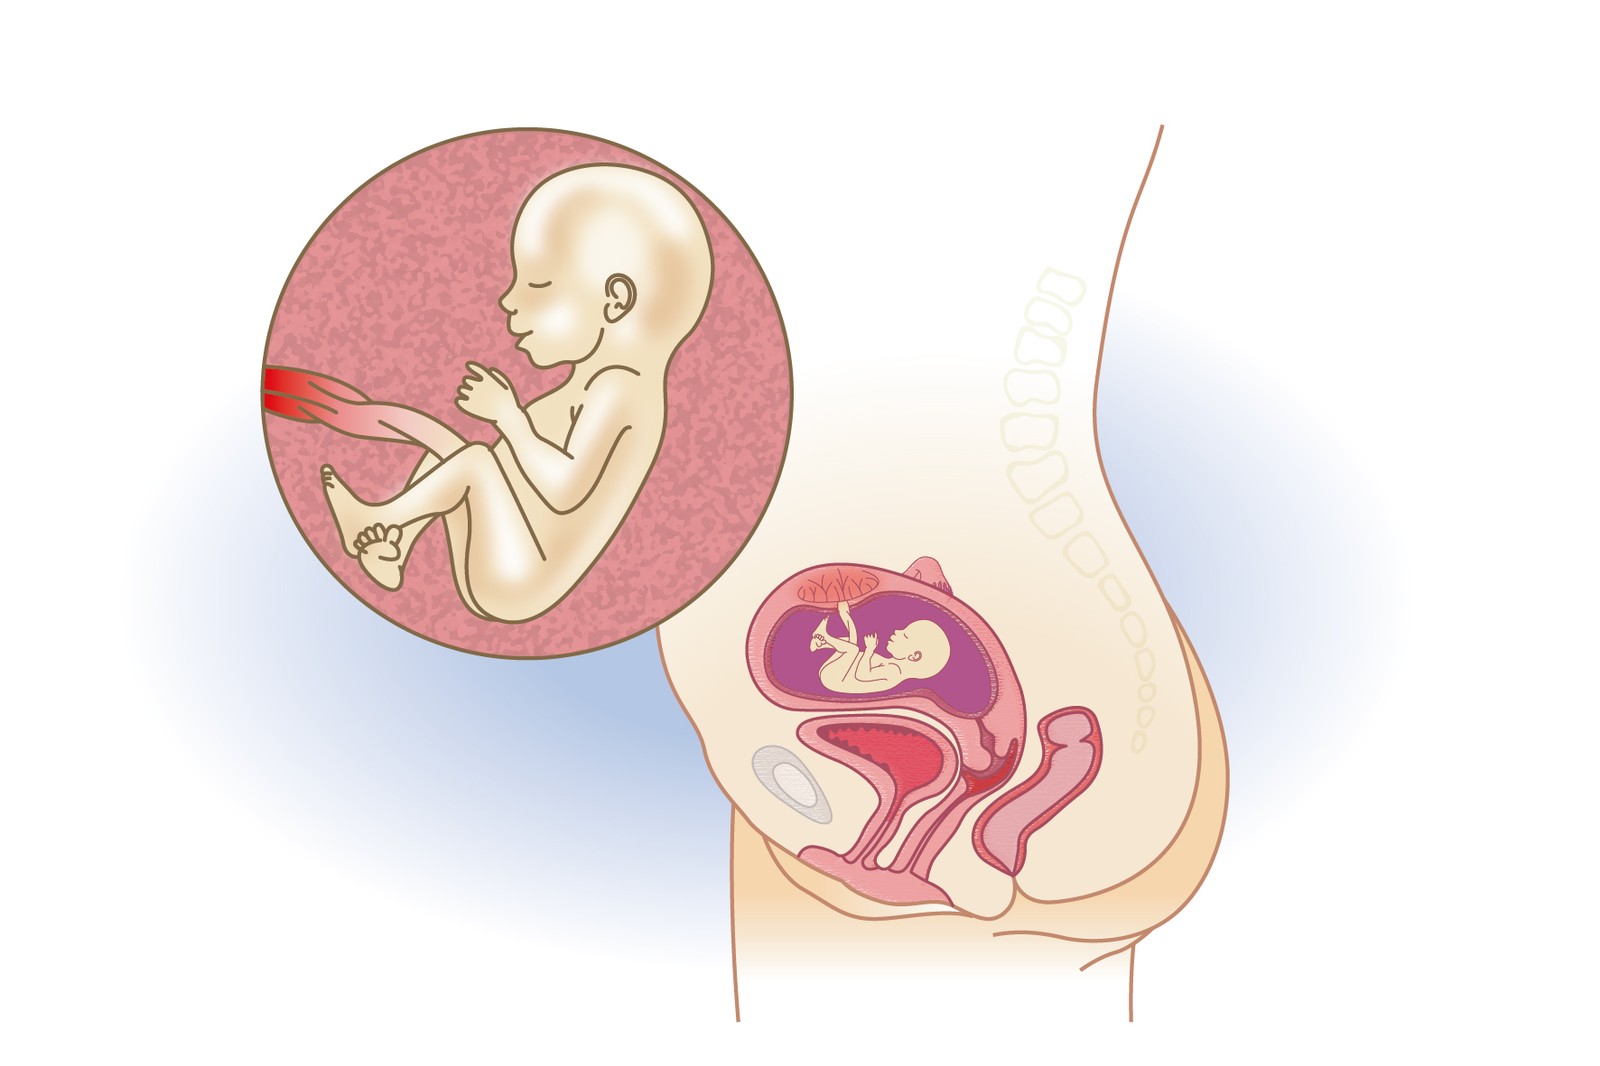 Plod v 17. týdnu těhotenství